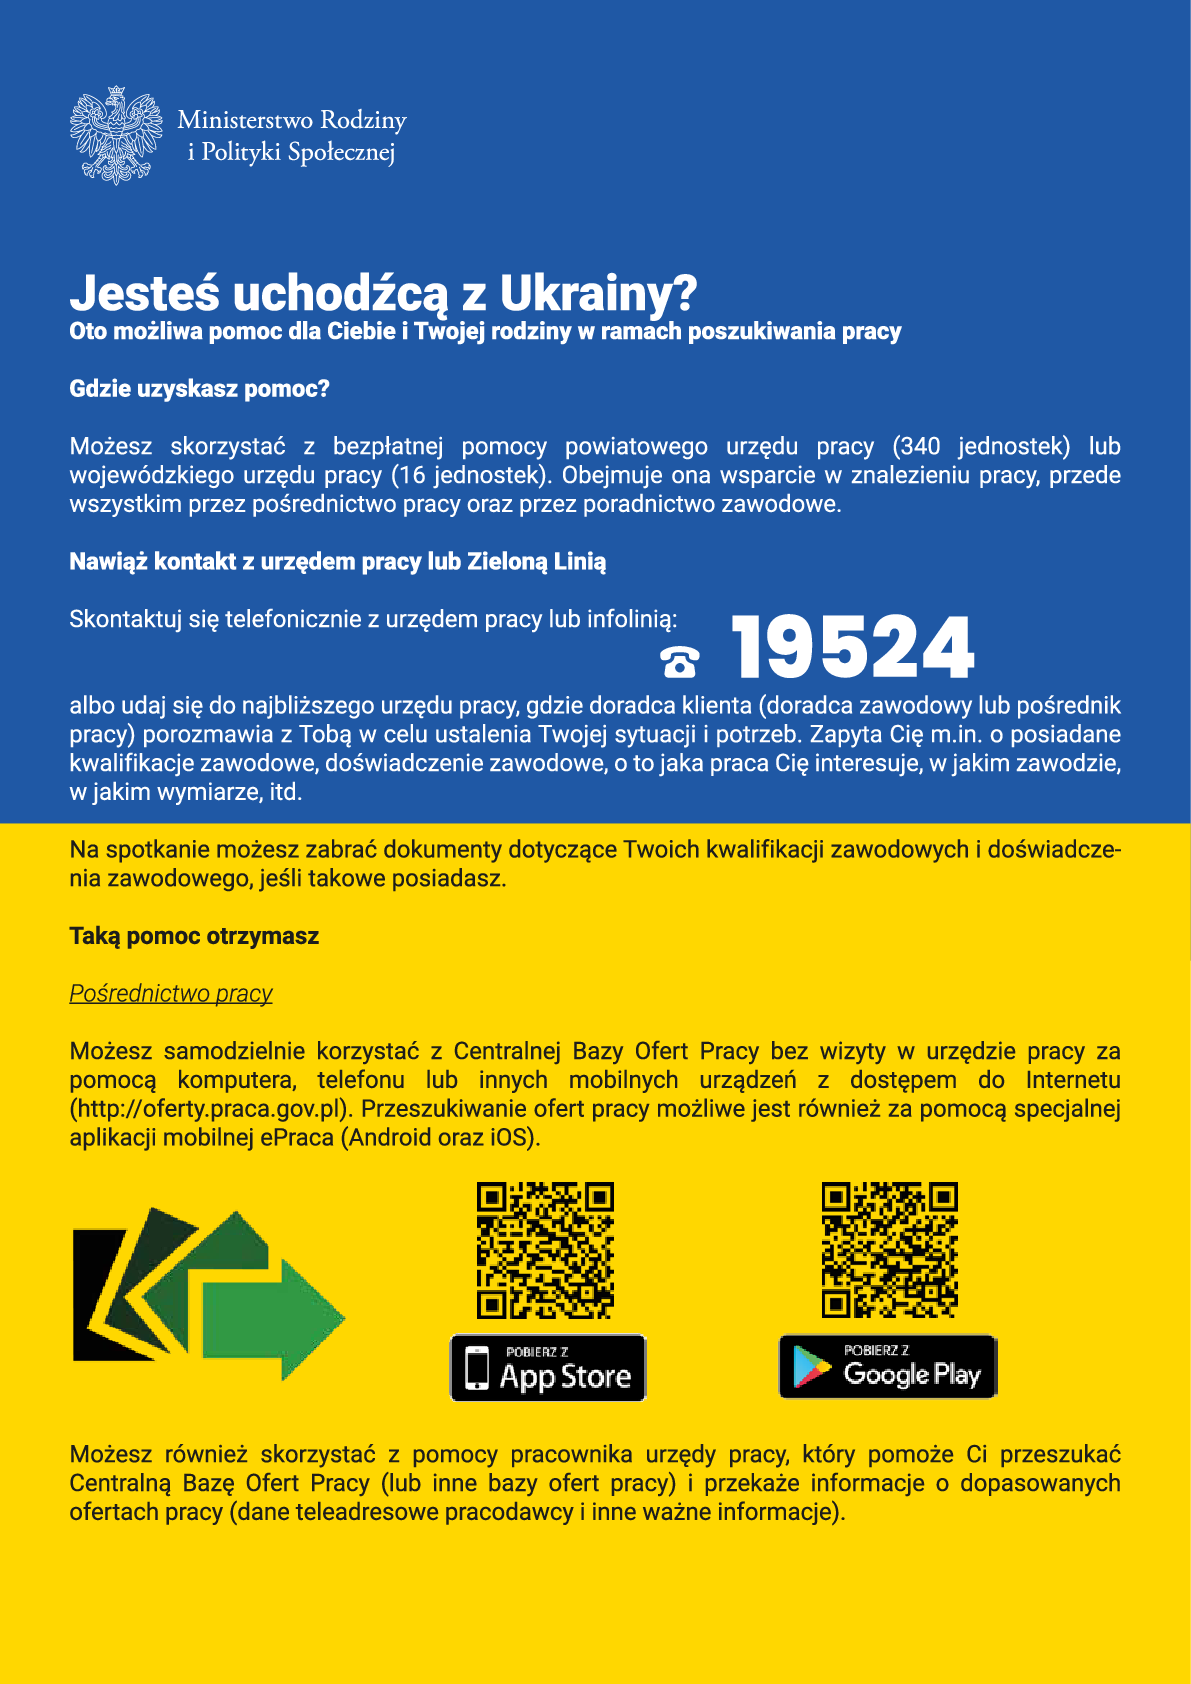 Dwukolorowy plakat z ofertą pomocy oferowanej uchodźcą z Ukrainy dostępnej w Powiatowym Urzędzie Pracy w języku polskim